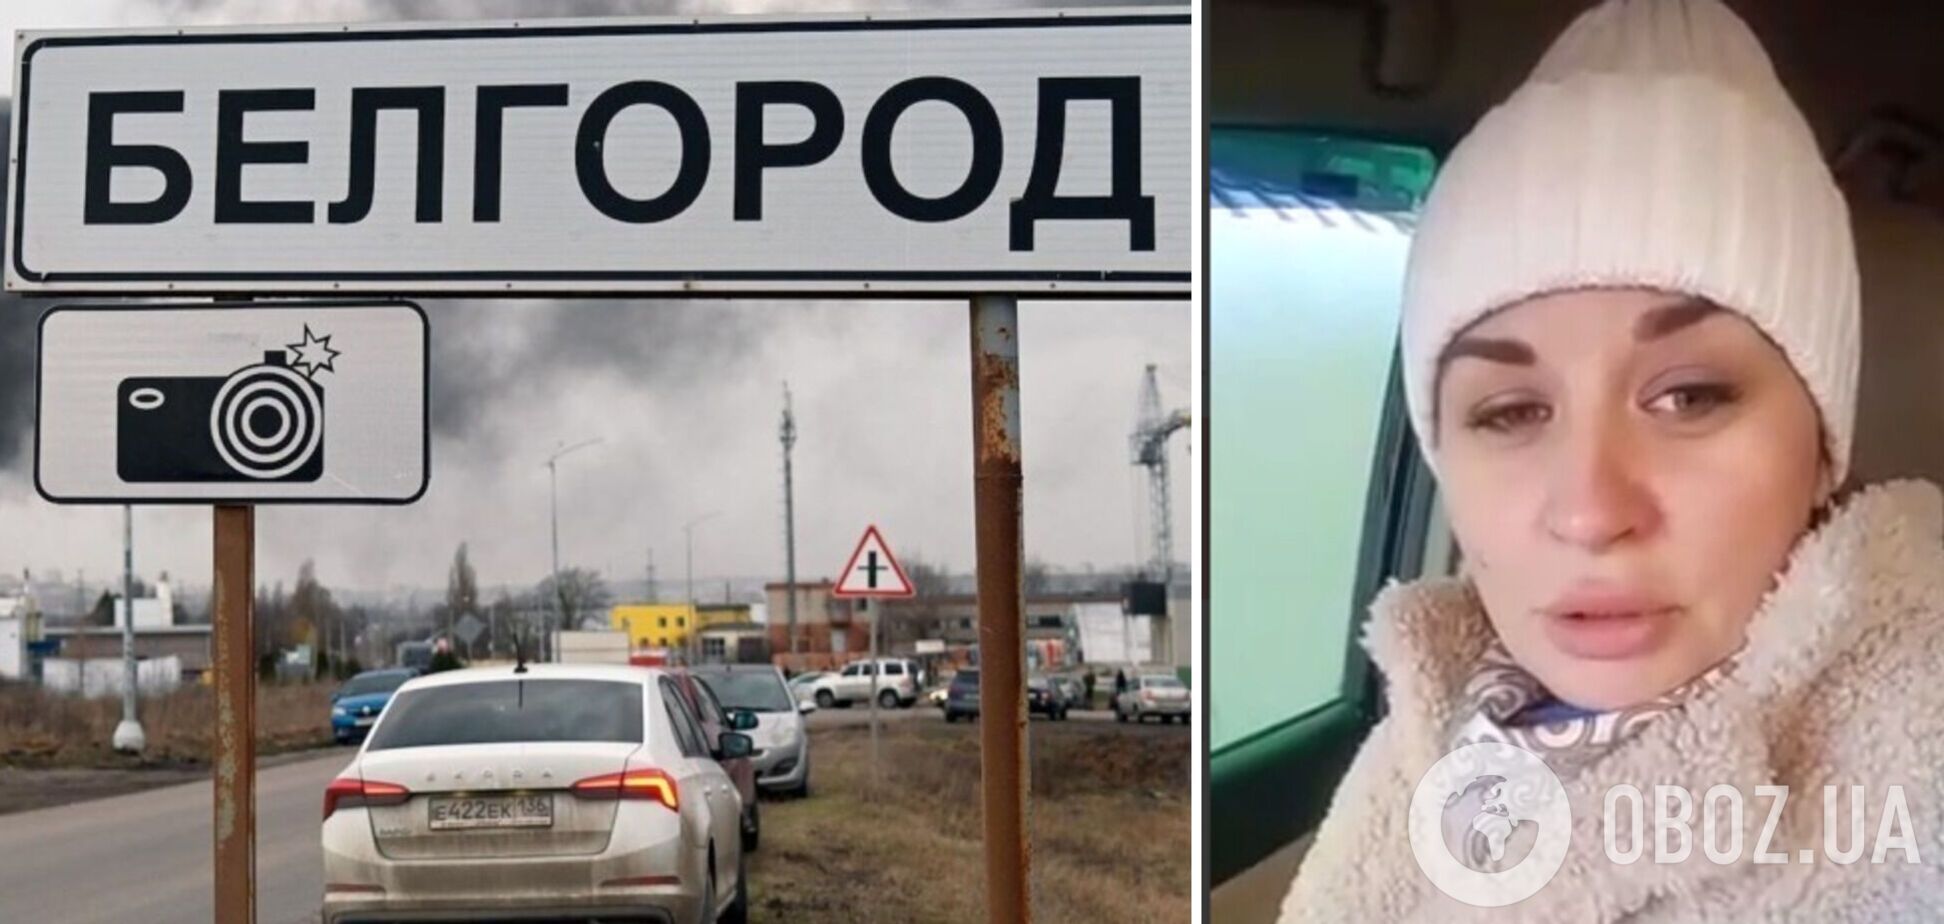 'Путин, помоги! Мы не Луганск, мы Россия': жительница Белгородской области призвала спасти их от ежедневных обстрелов. Видео